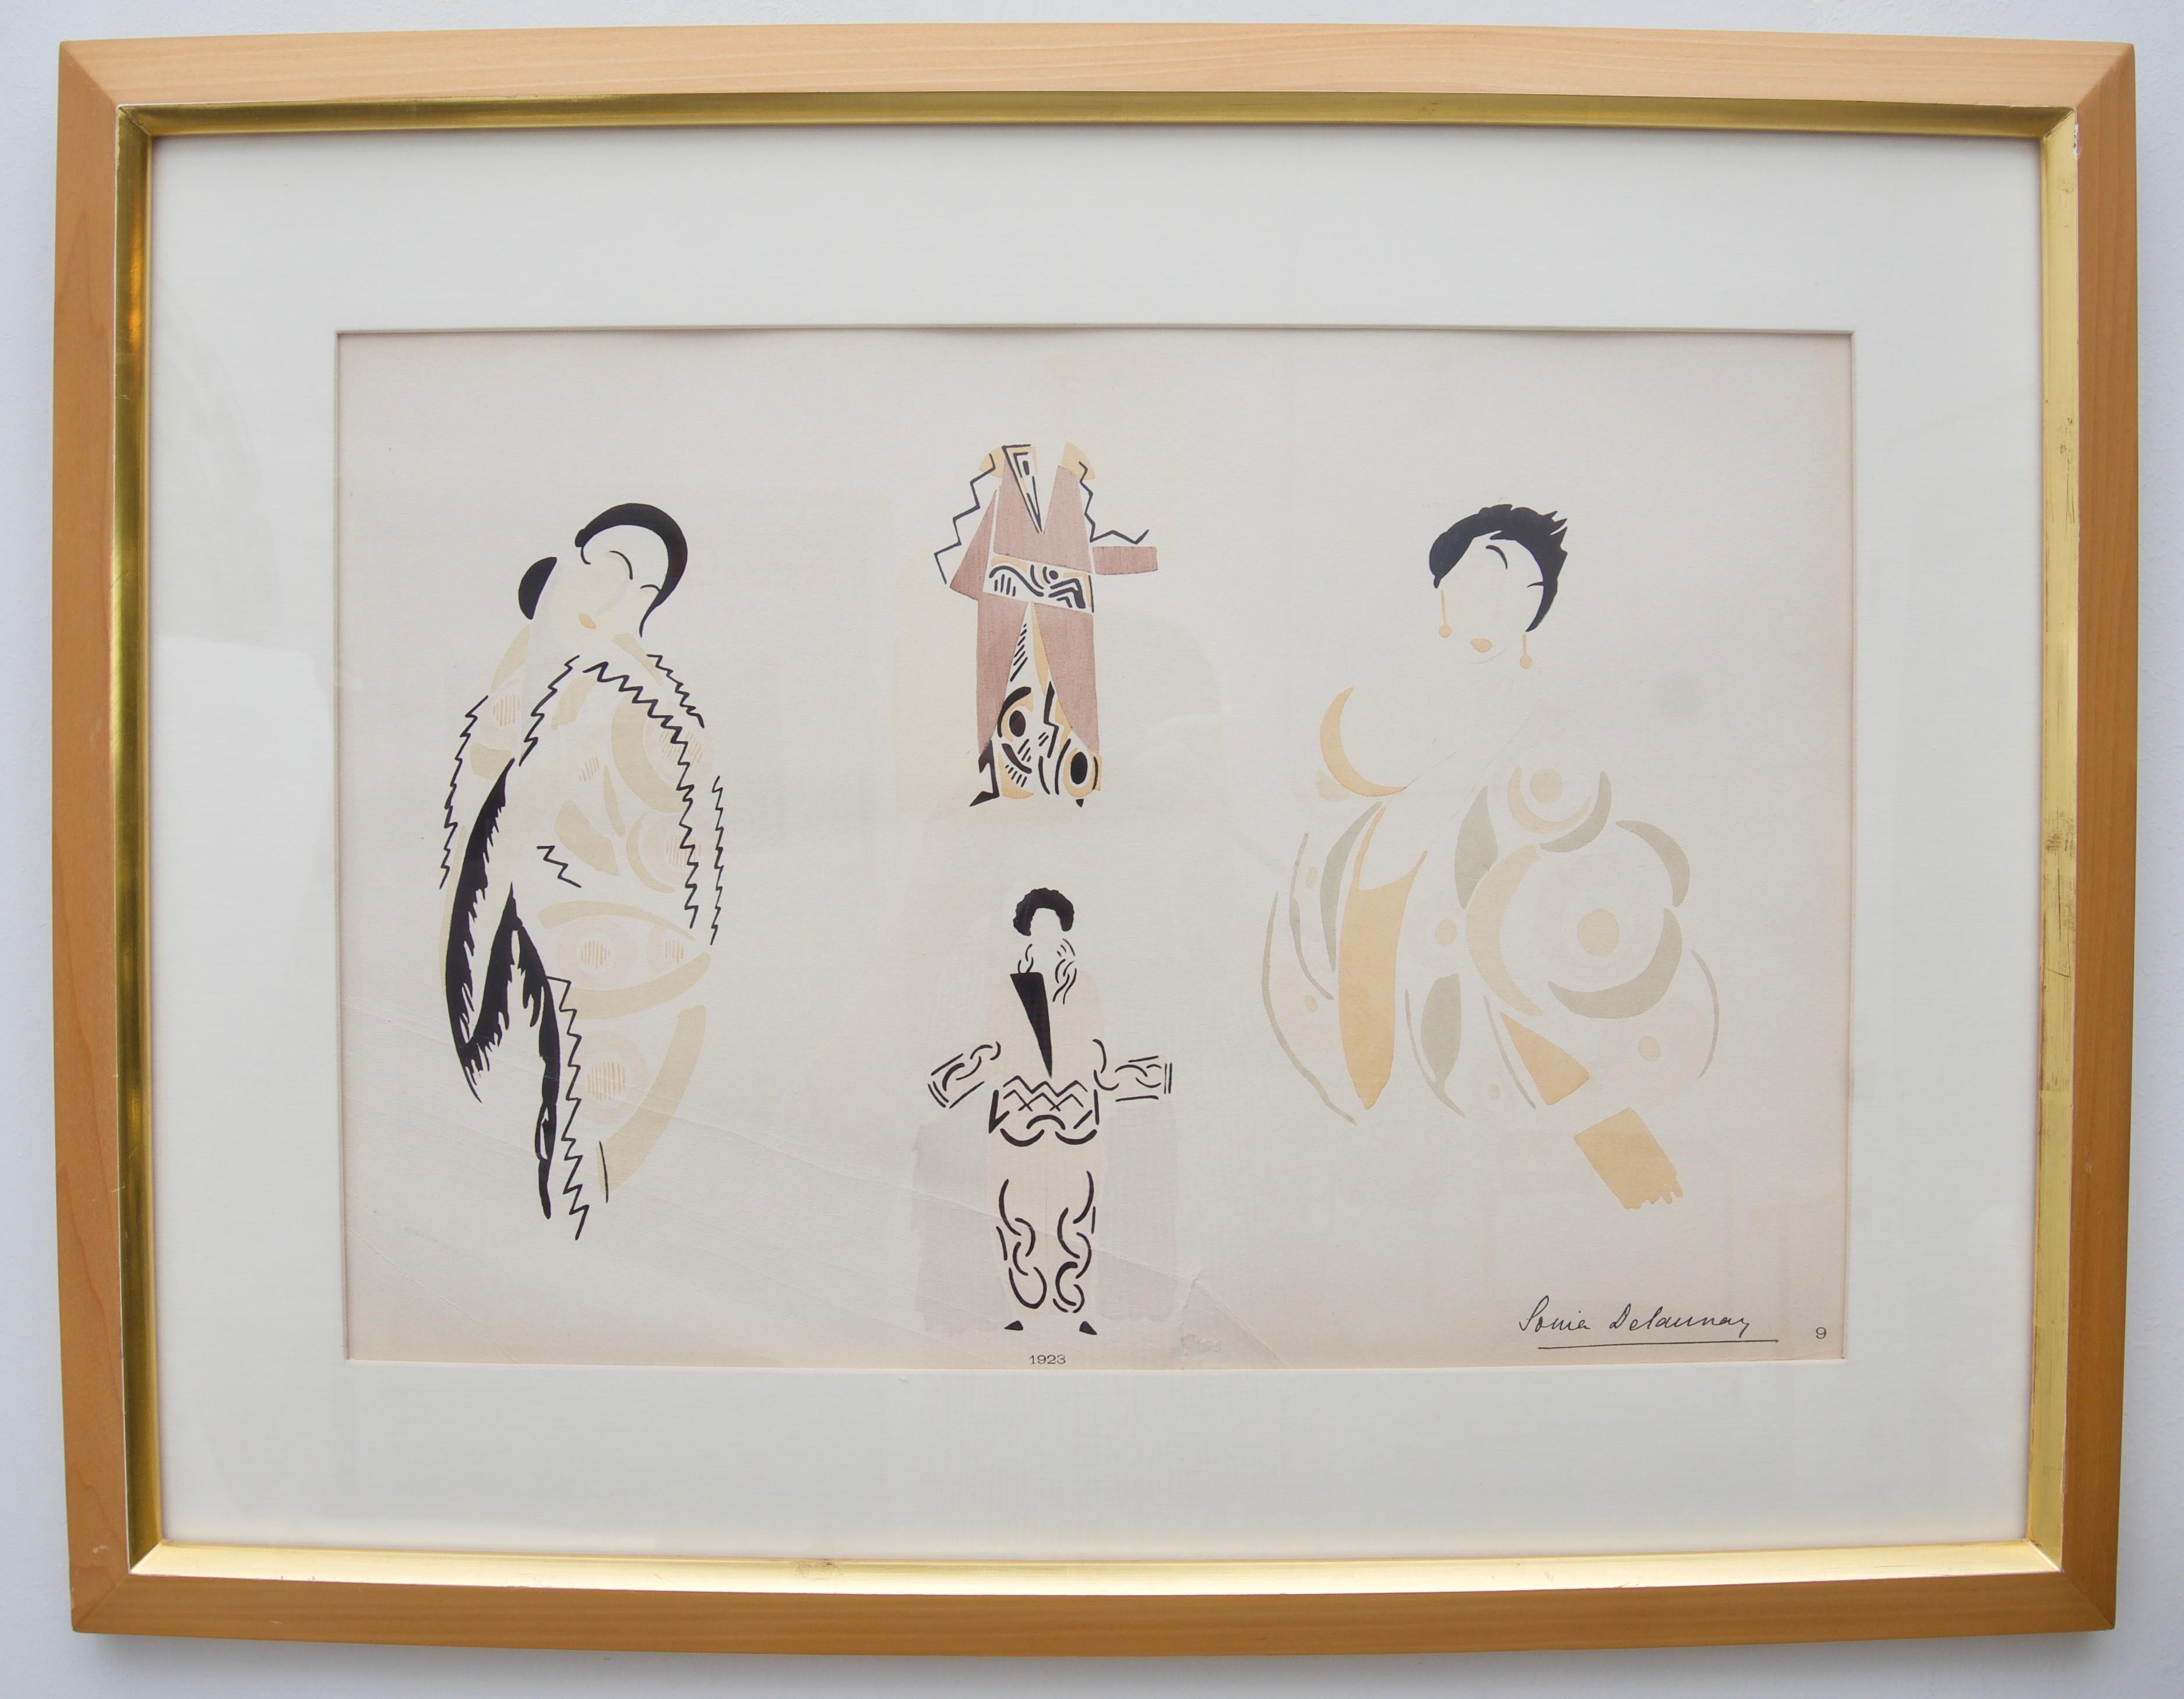 Diese stilvolle französische Art-Déco-Modegouache stammt aus dem Jahr 1923 und hat mit stilisierten asiatischen Details in den Kleidungsstücken eindeutig ein orientalisches Flair.

Über den Modedesigner: 
Sonia Delaunay verbrachte die meiste Zeit